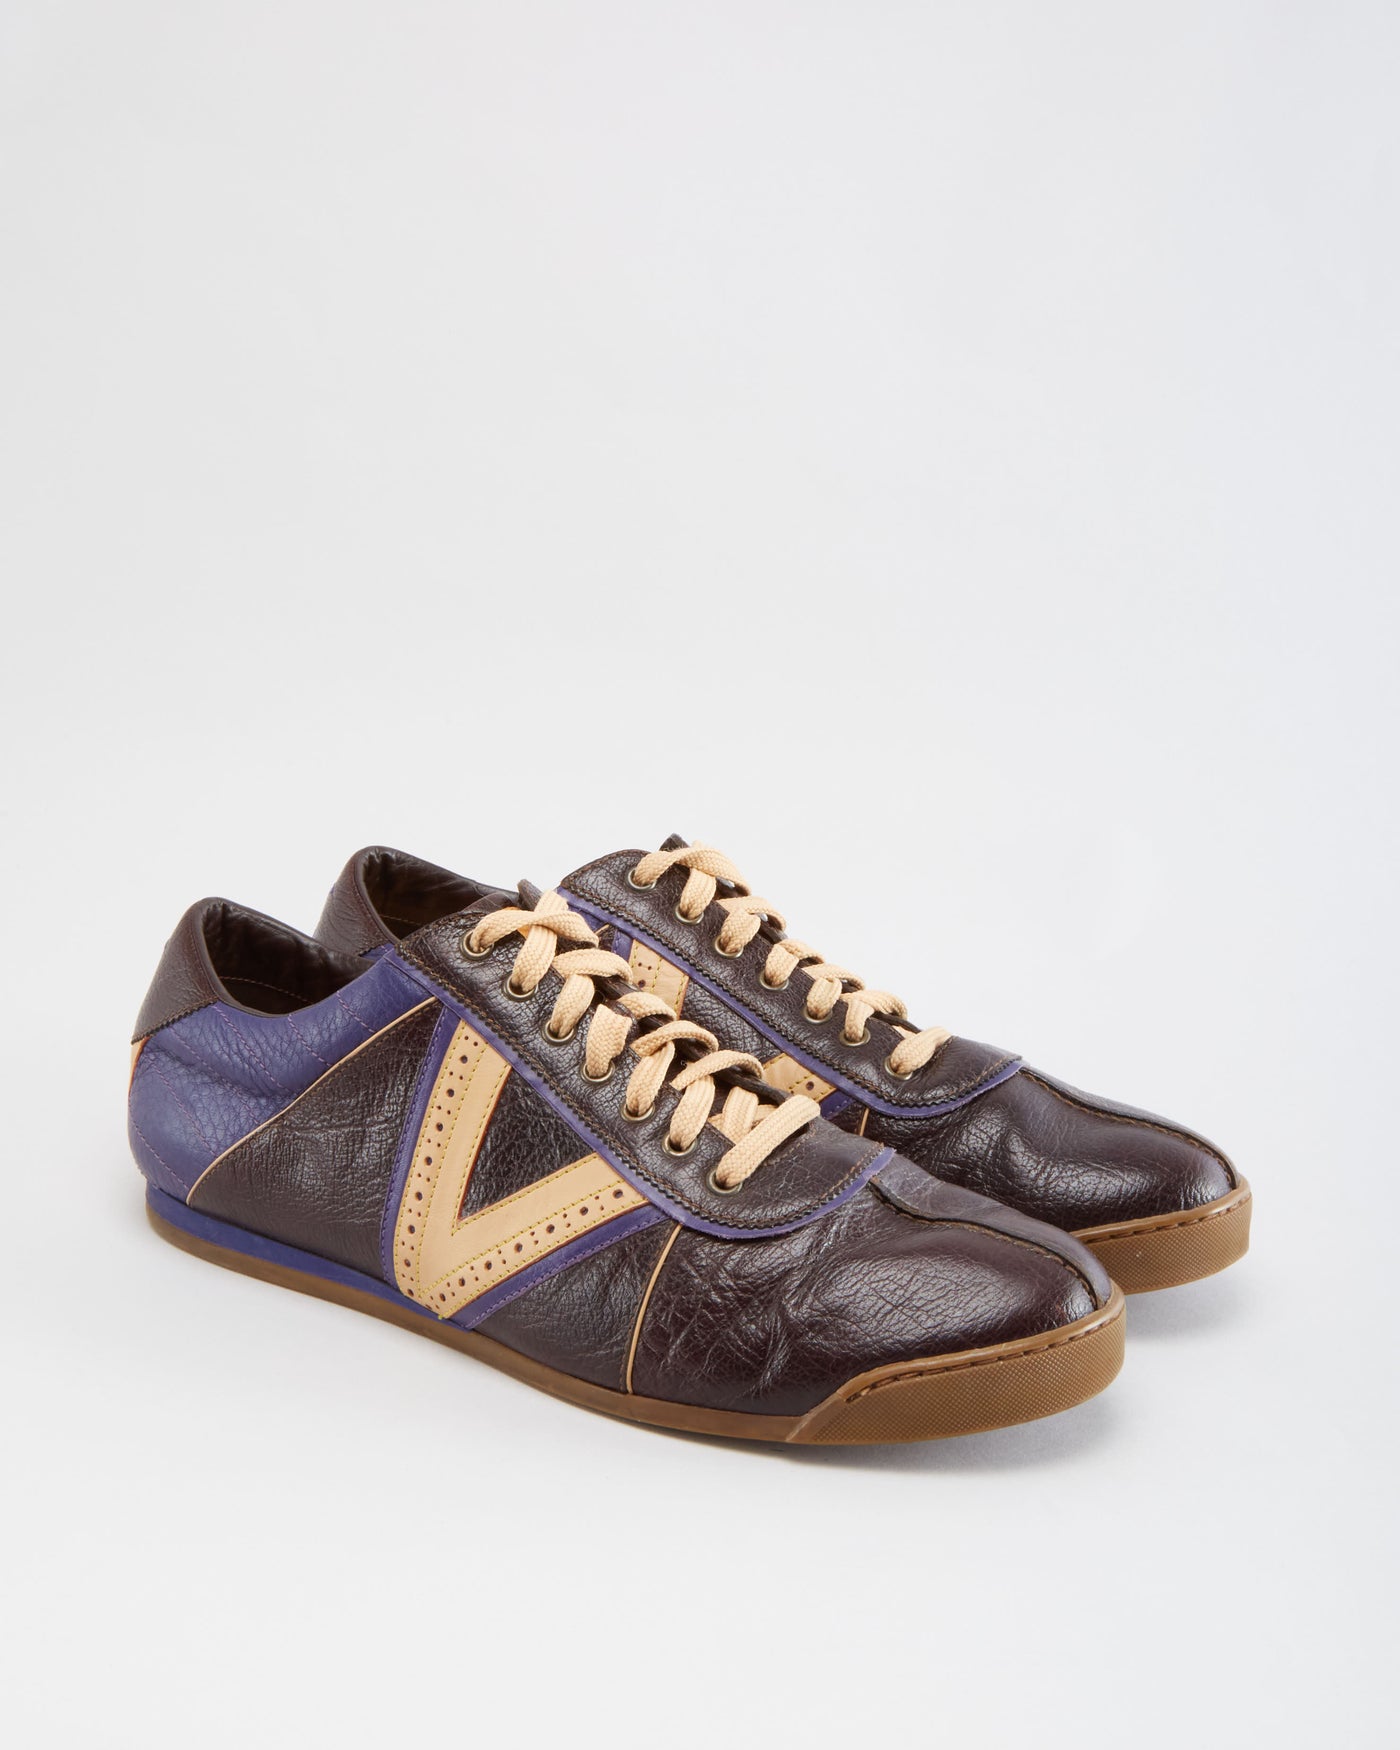 Vintage 90s Louis Vuitton Casual Shoes - UK 8.5